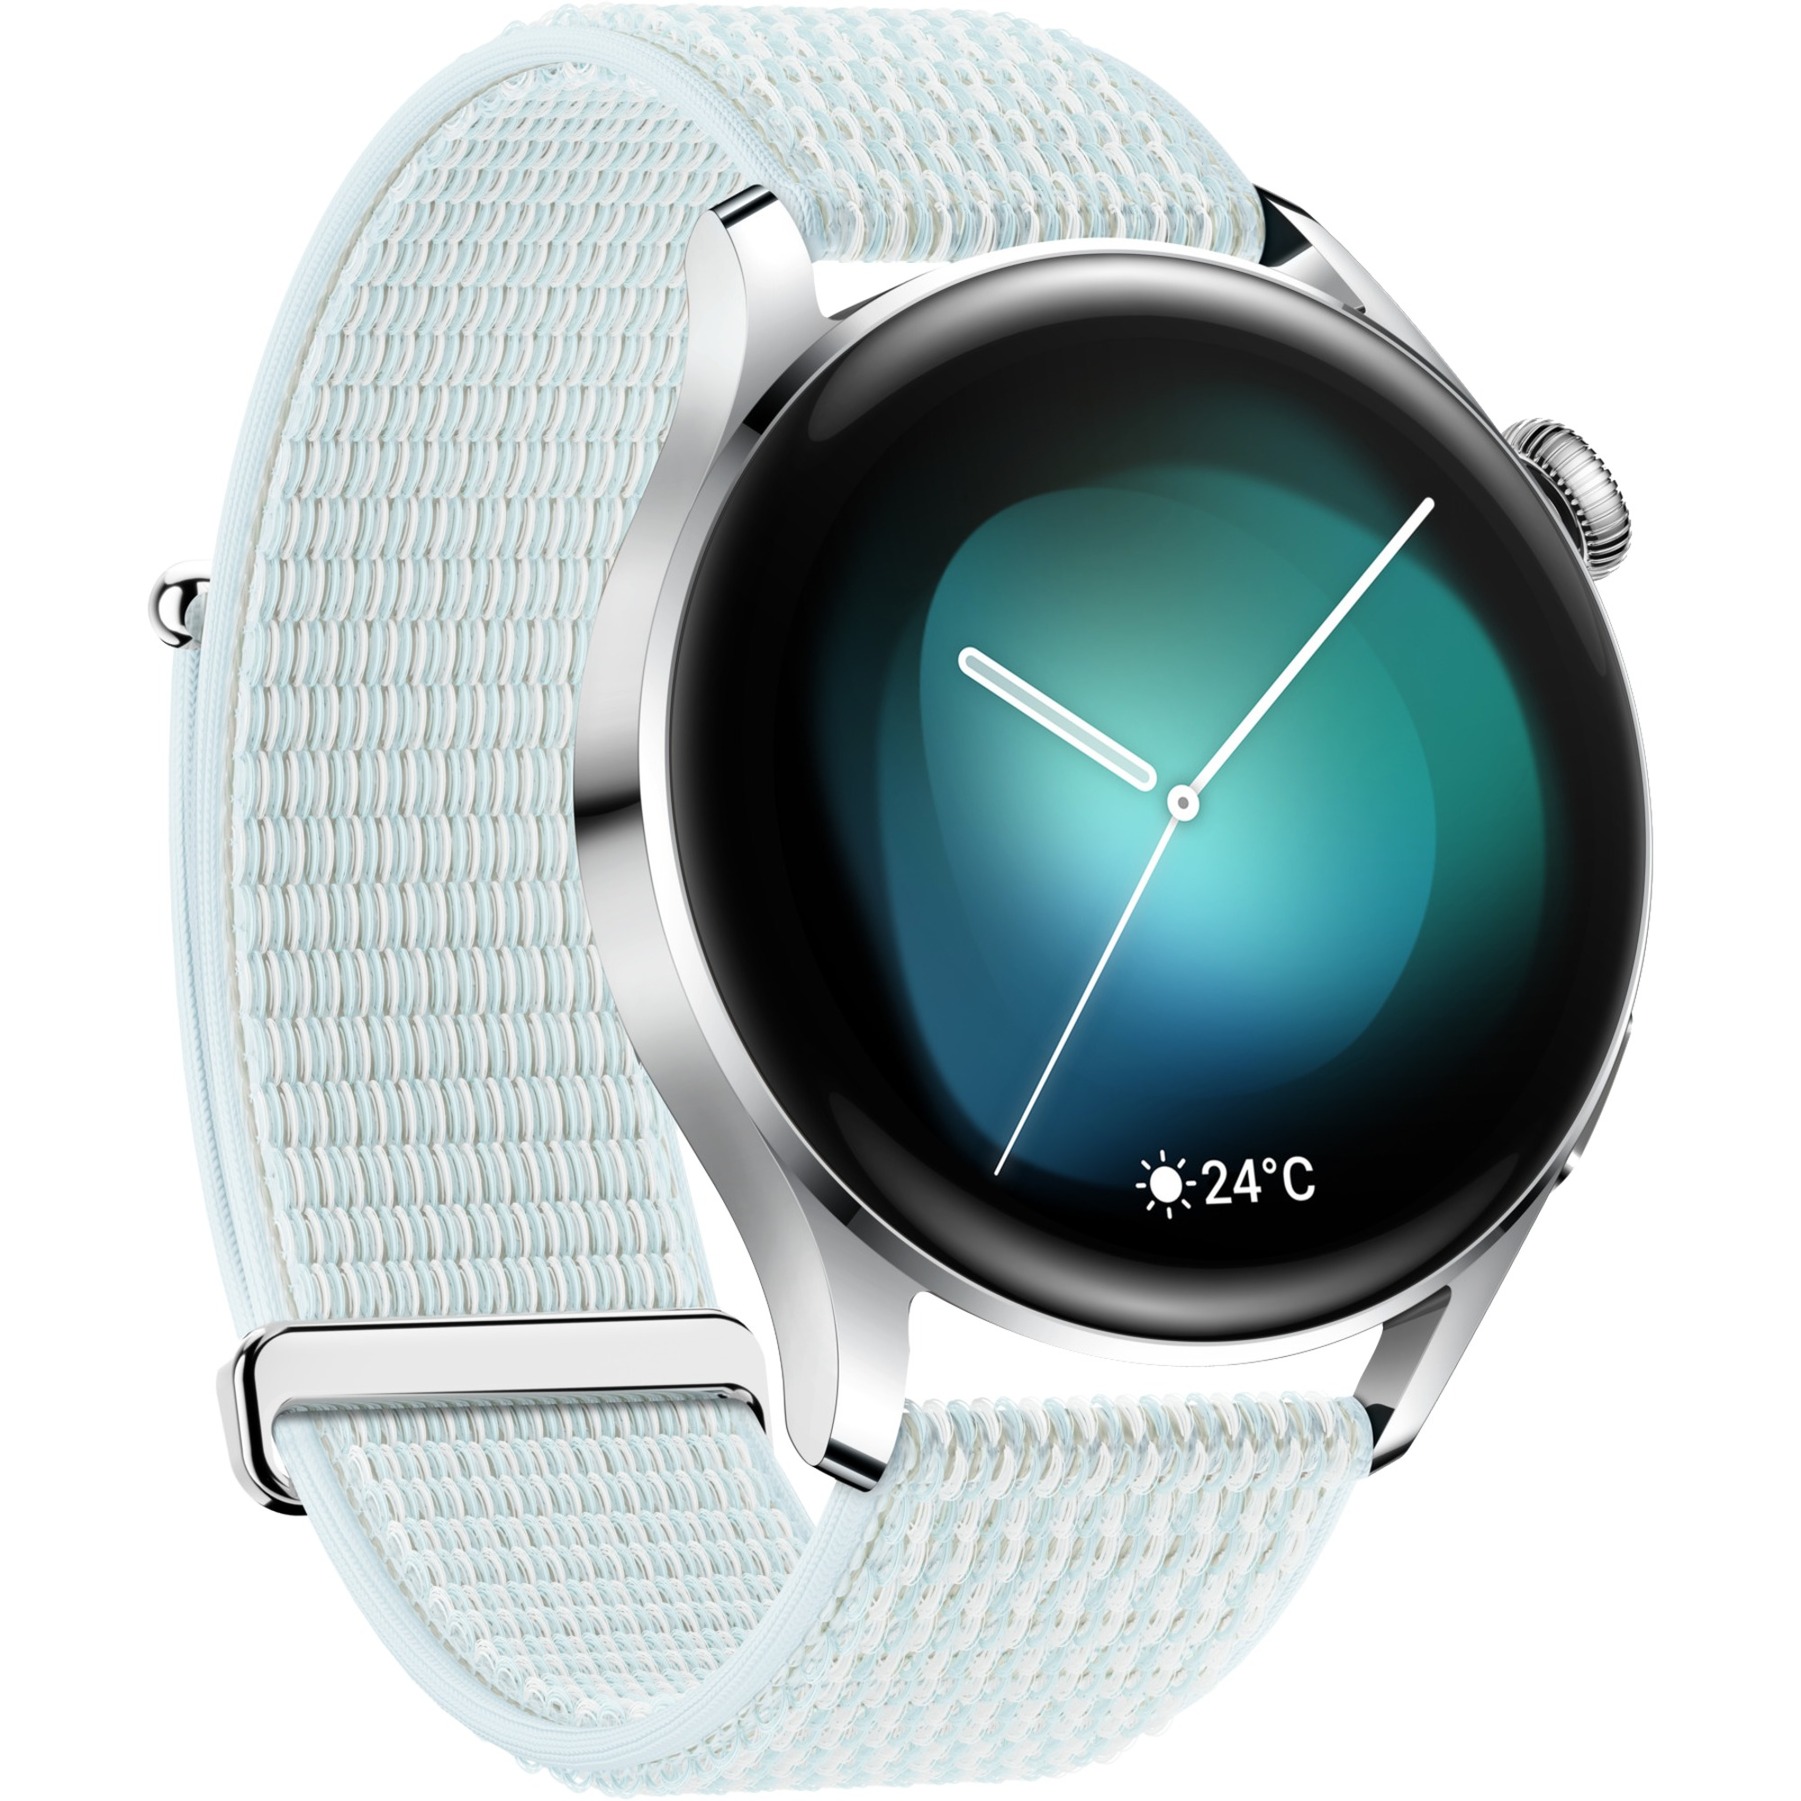 Image of Alternate - Watch 3 Classic, Smartwatch online einkaufen bei Alternate